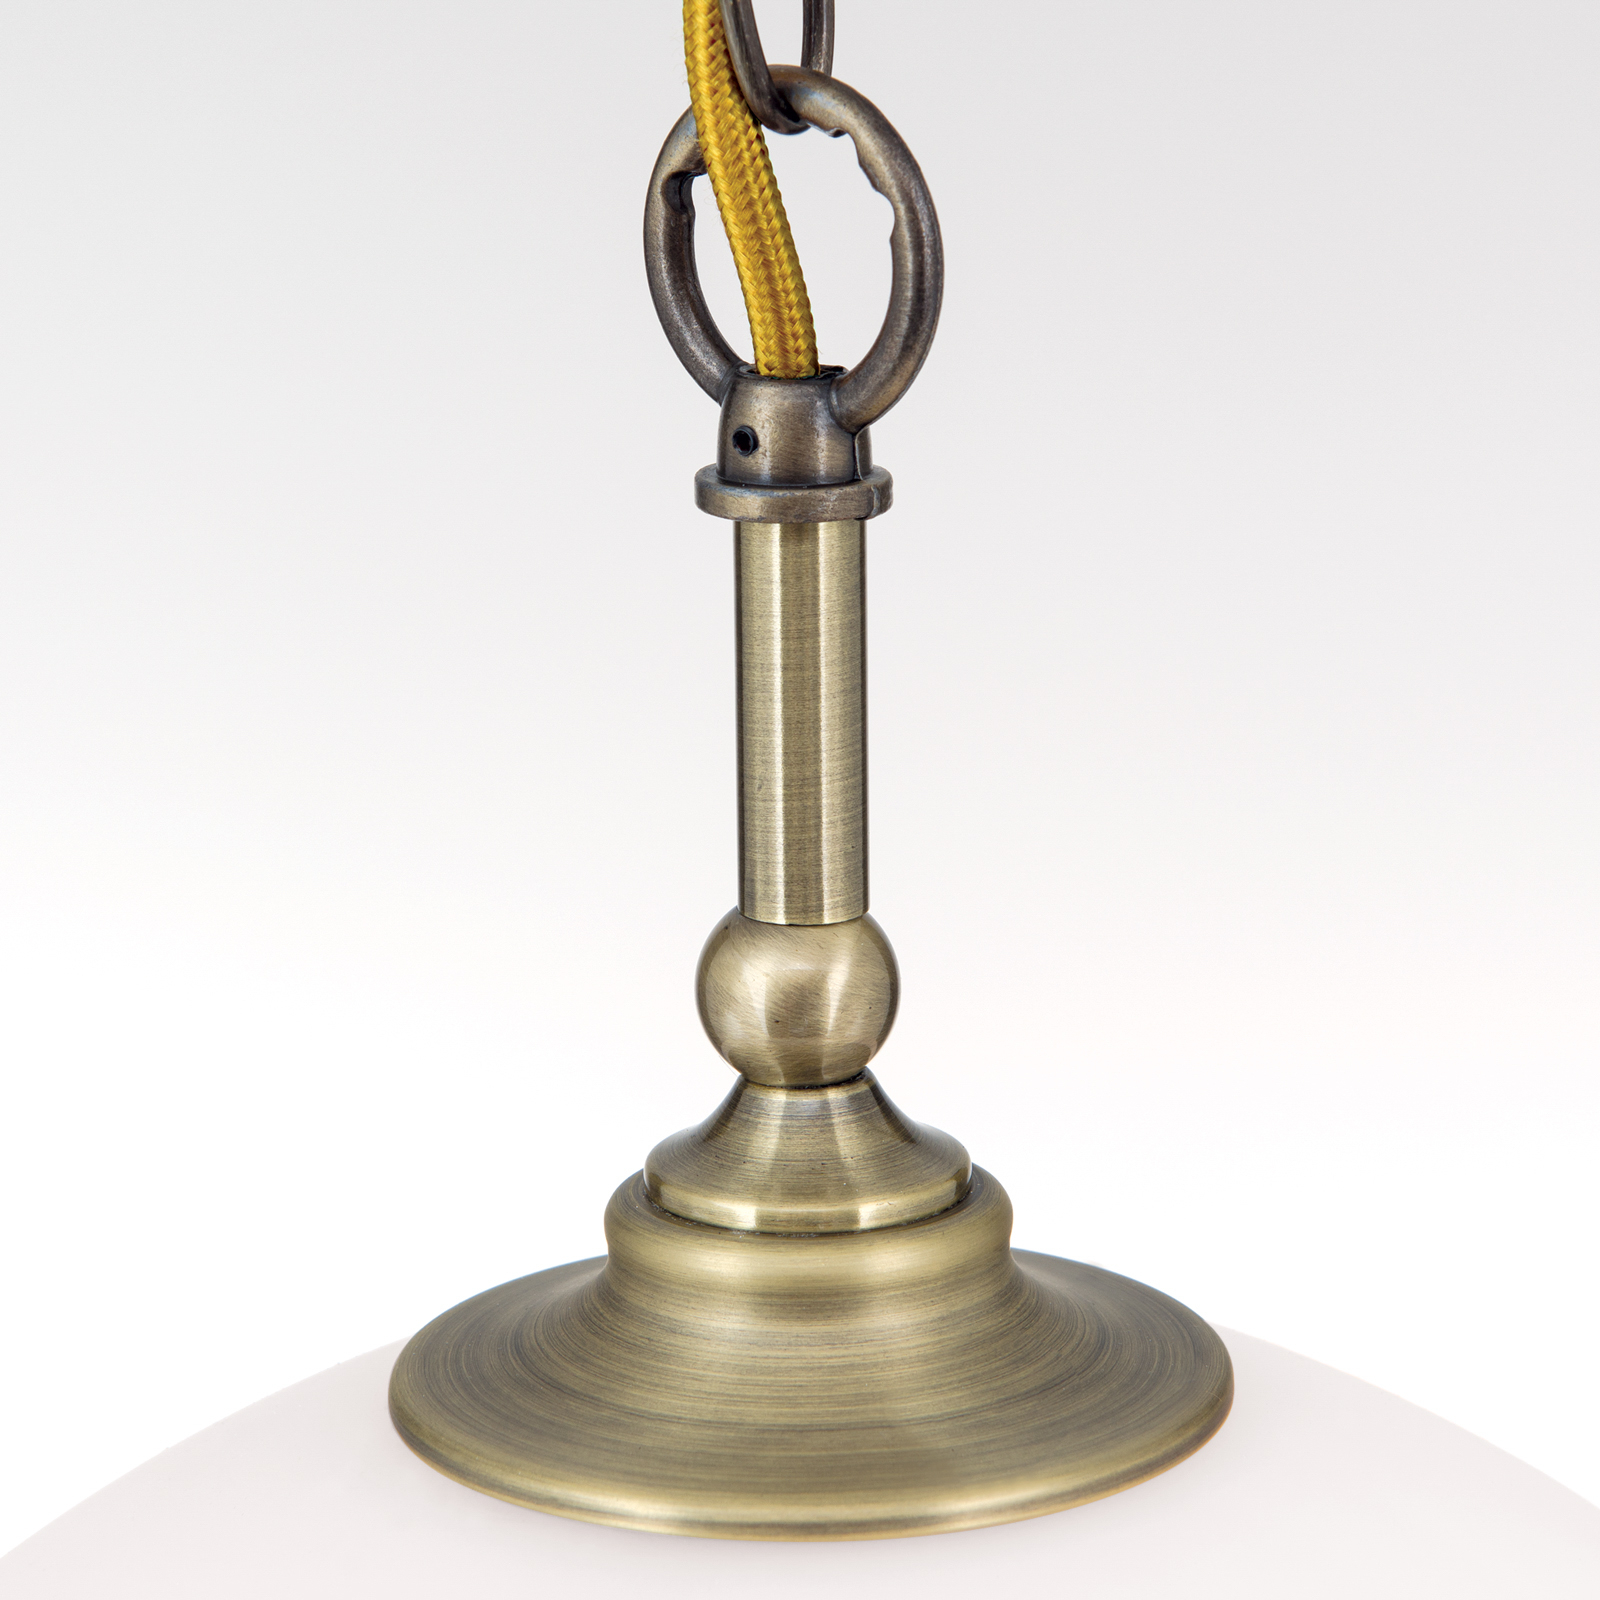 Závěsné světlo Old Lamp, řetězový závěs, 1 zdroj